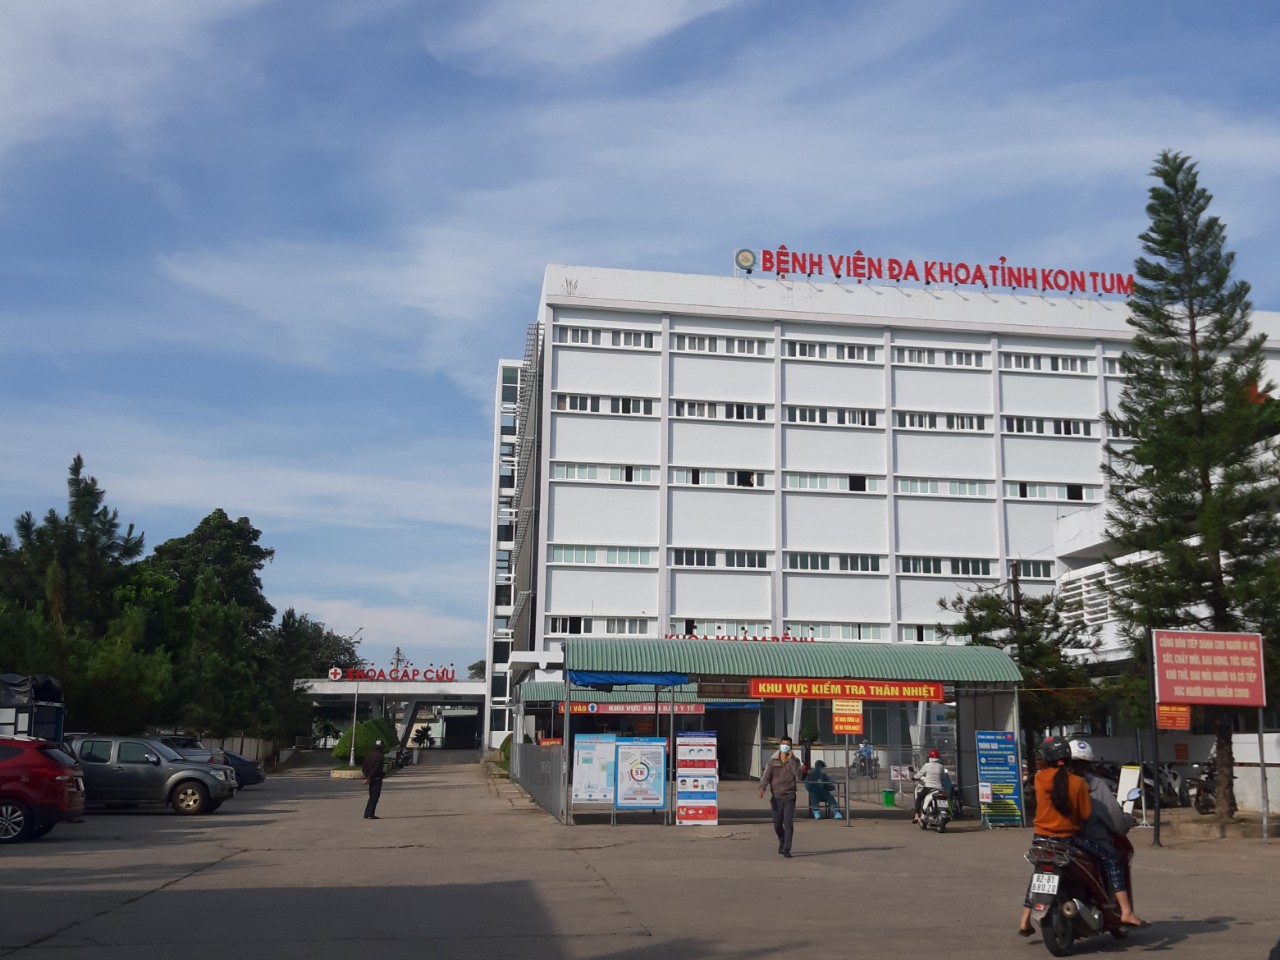 Xét nghiệm toàn bộ Bệnh viện đa khoa tỉnh Kon Tum vì phát hiện 8 F0 - Ảnh 1.